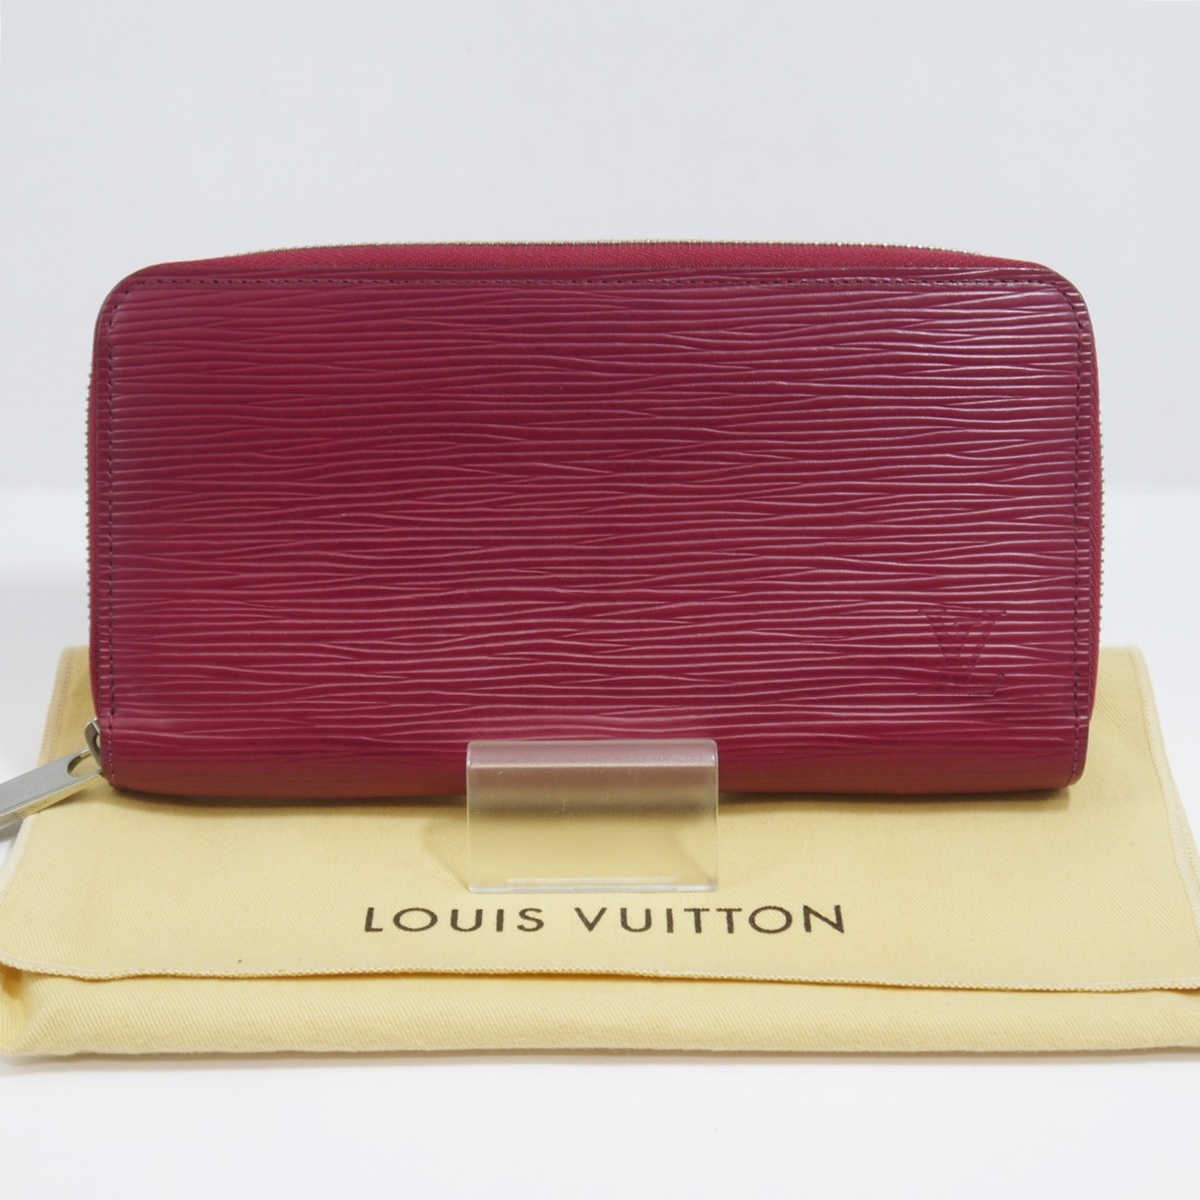 USED品・保管品 Louis Vuitton ルイヴィトン M60305 ジッピーウォレット エピ フューシャ ラウンドファスナー 長財布 MI2114 保存袋付き